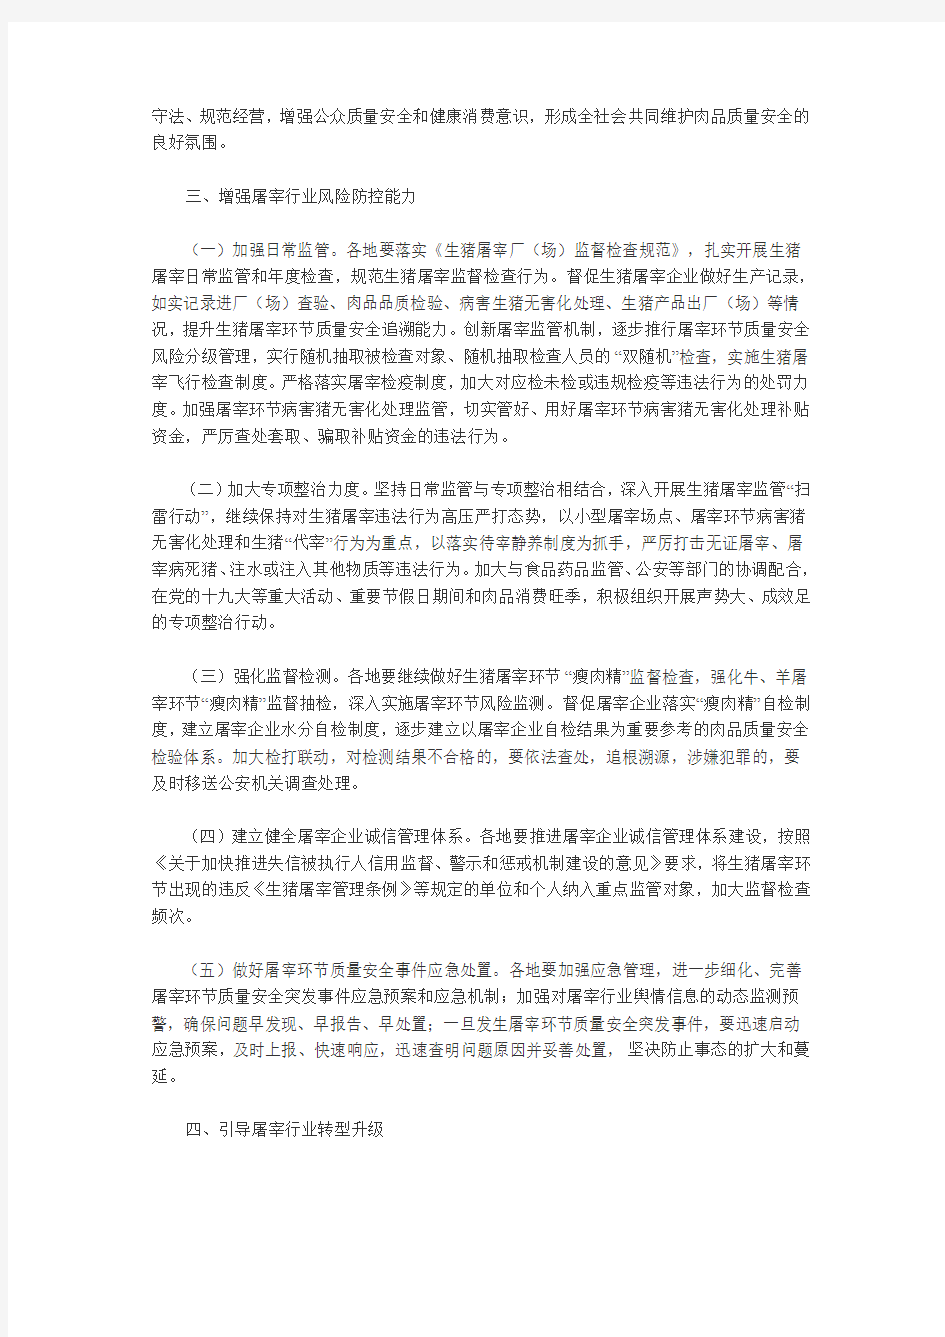 重庆市农业委员会办公室转发农业部办公厅关于做好2017年屠宰行业管理工作的通知(渝农办发〔2017〕45号)